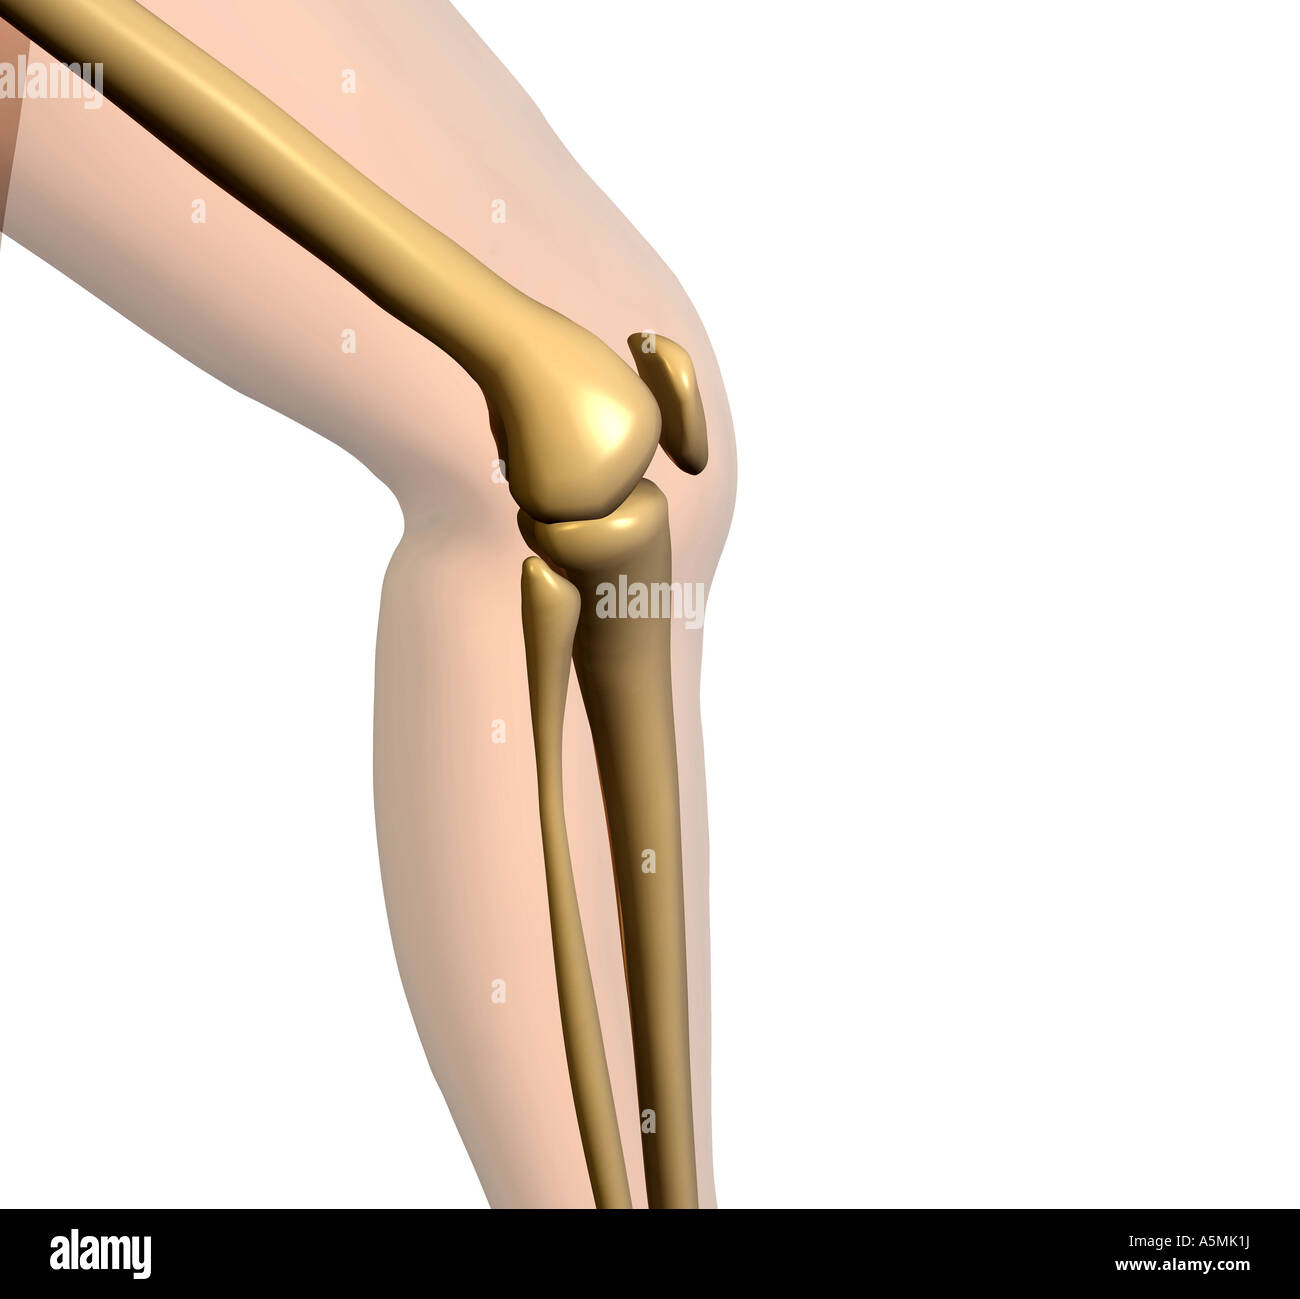 Anatomie Knie anatomy knee Stock Photo